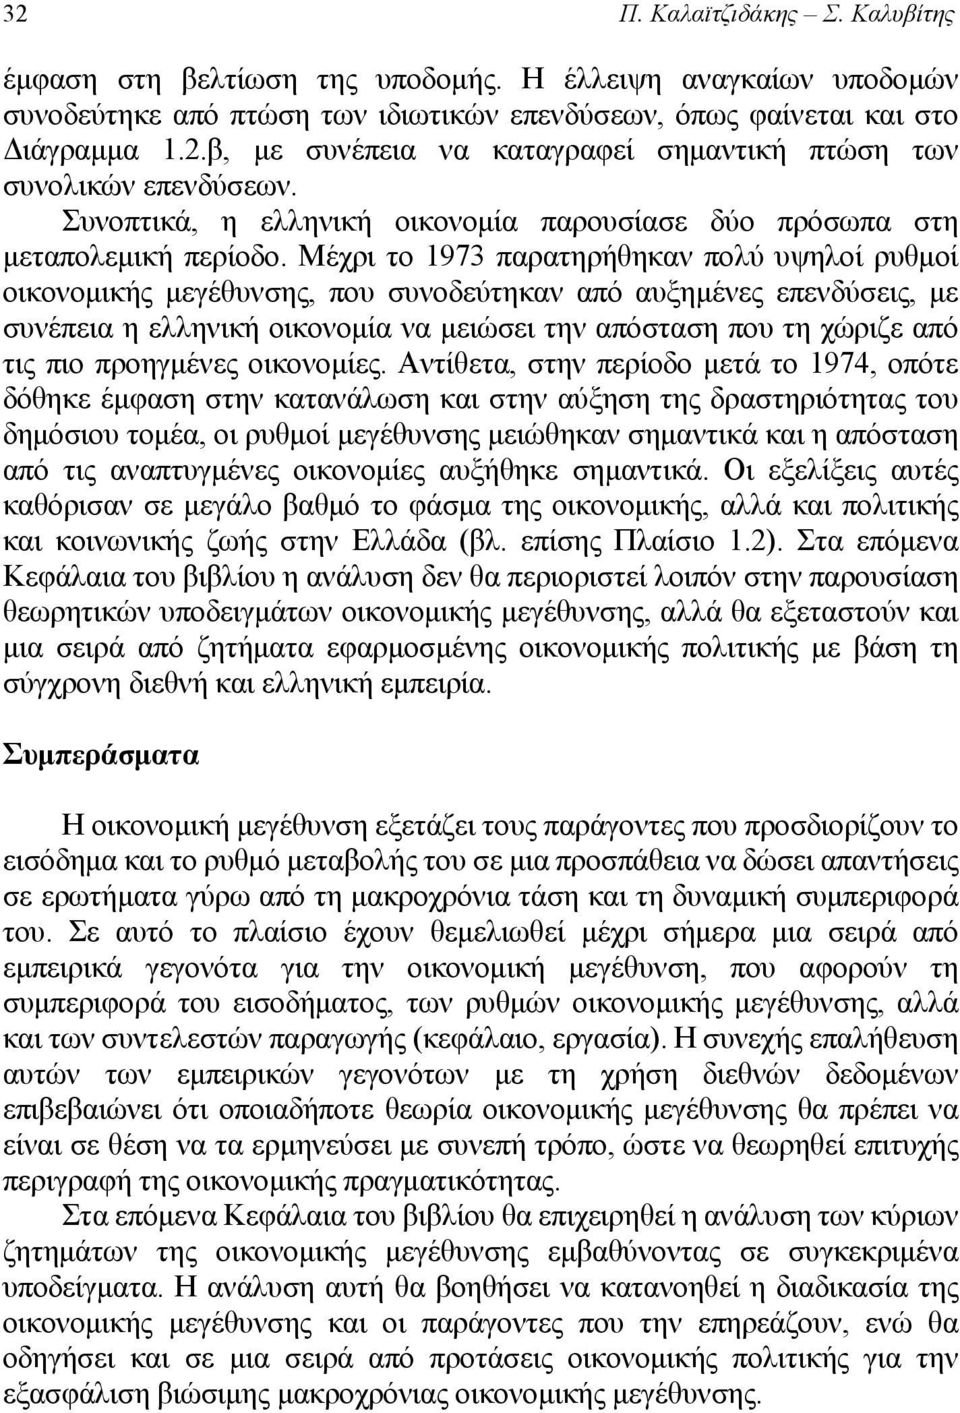 Μέχρι το 1973 παρατηρήθηκαν πολύ υψηλοί ρυθμοί οικονομικής μεγέθυνσης, που συνοδεύτηκαν από αυξημένες επενδύσεις, με συνέπεια η ελληνική οικονομία να μειώσει την απόσταση που τη χώριζε από τις πιο